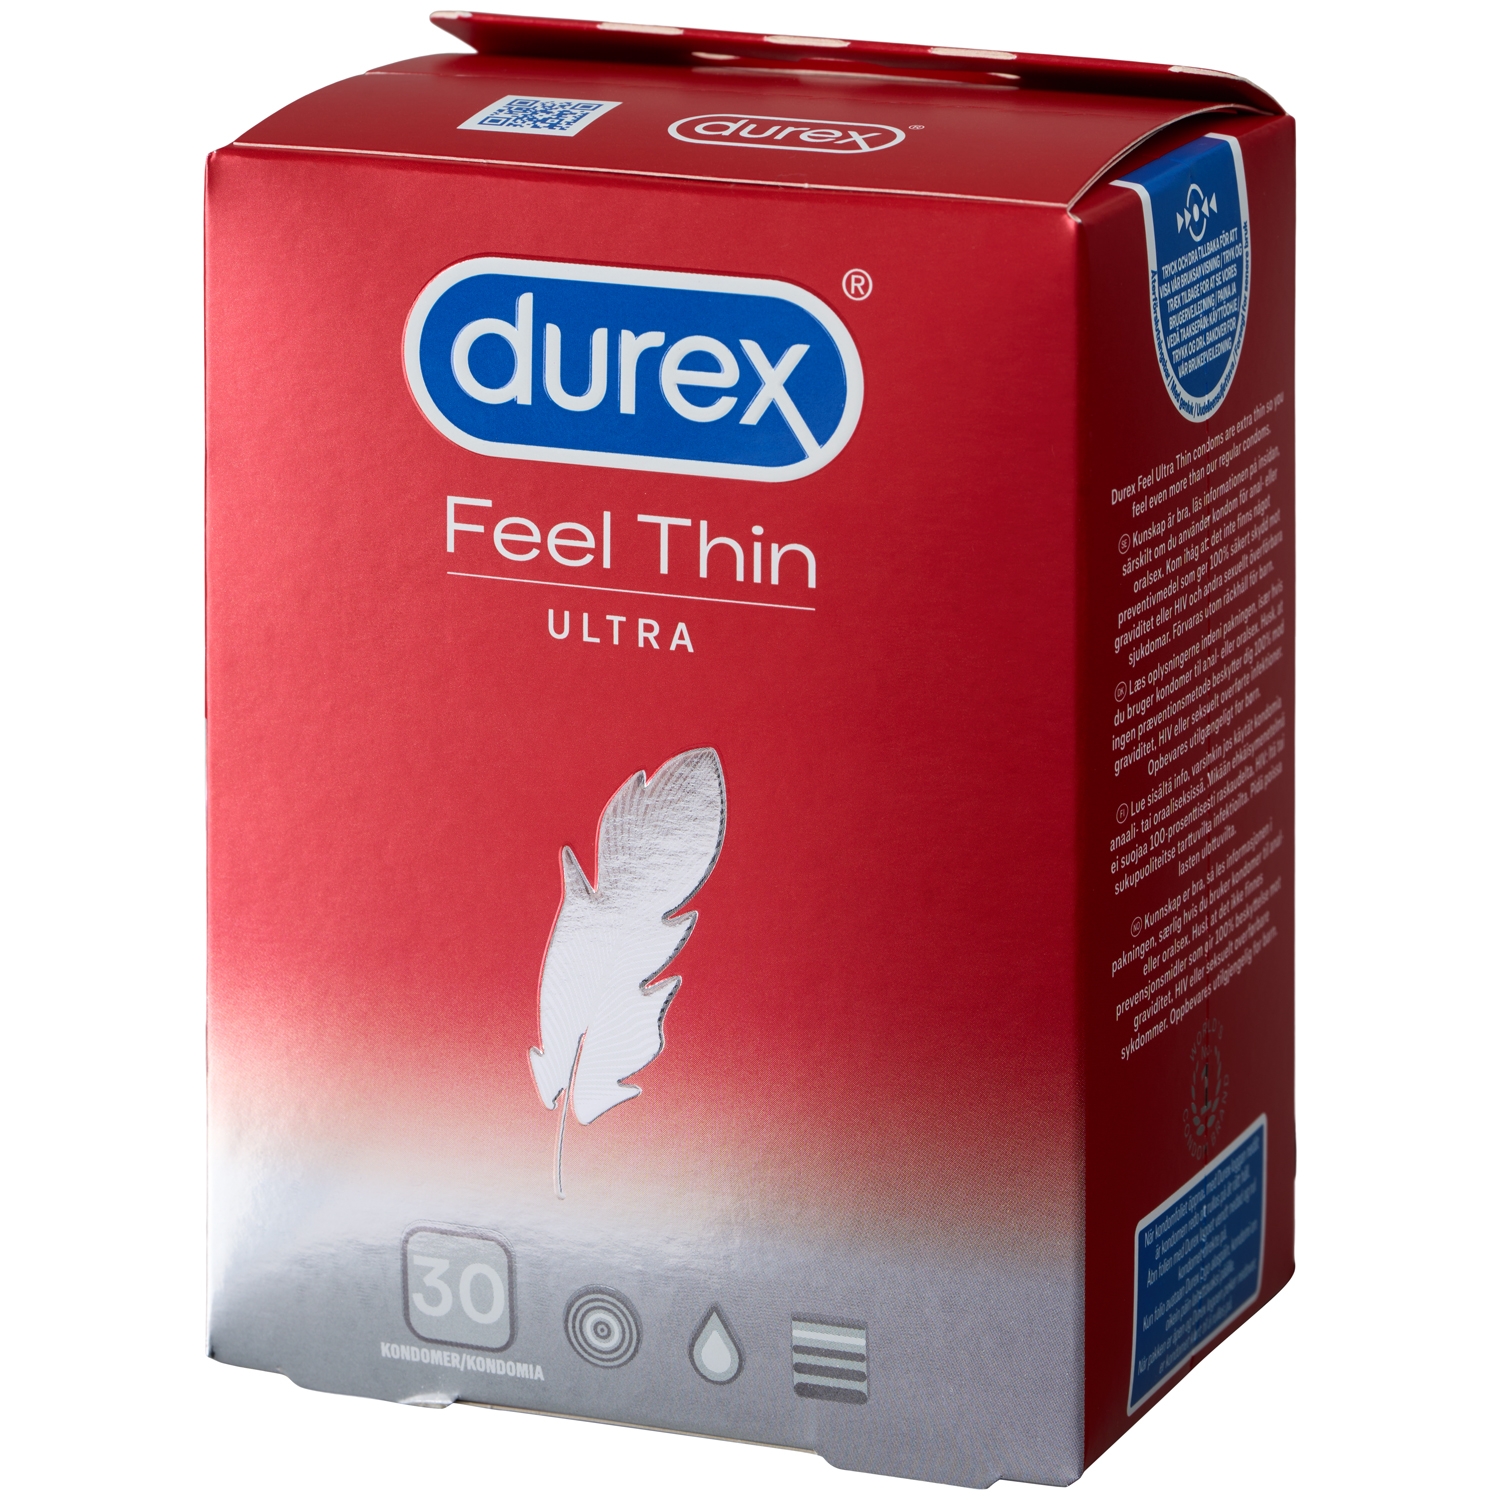 Durex Feel Thin Ultra Kondomer 30 stk - Rød thumbnail